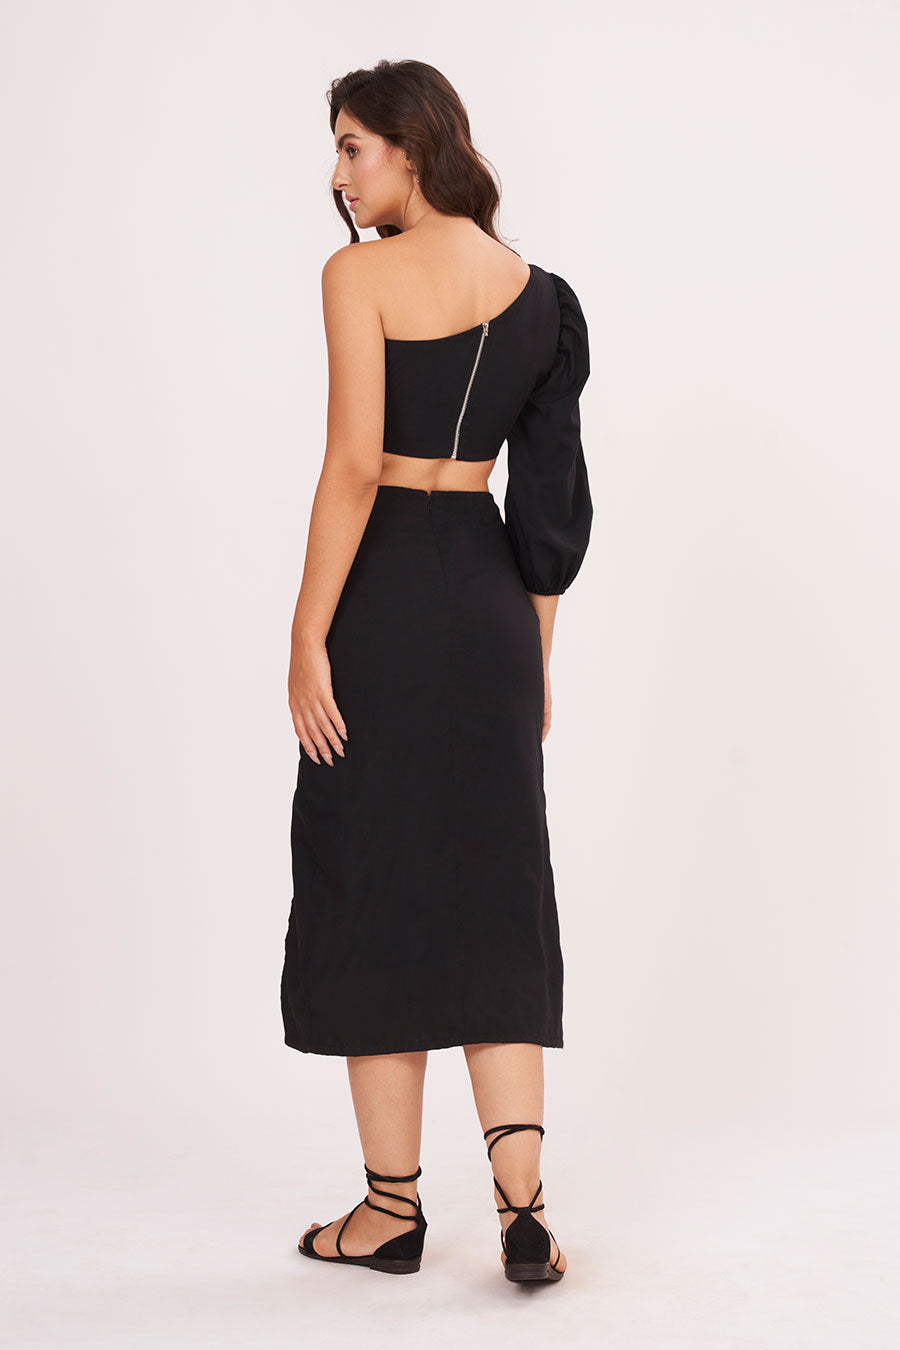 Black One-Shoulder Top & Skirt Co-Ord Set